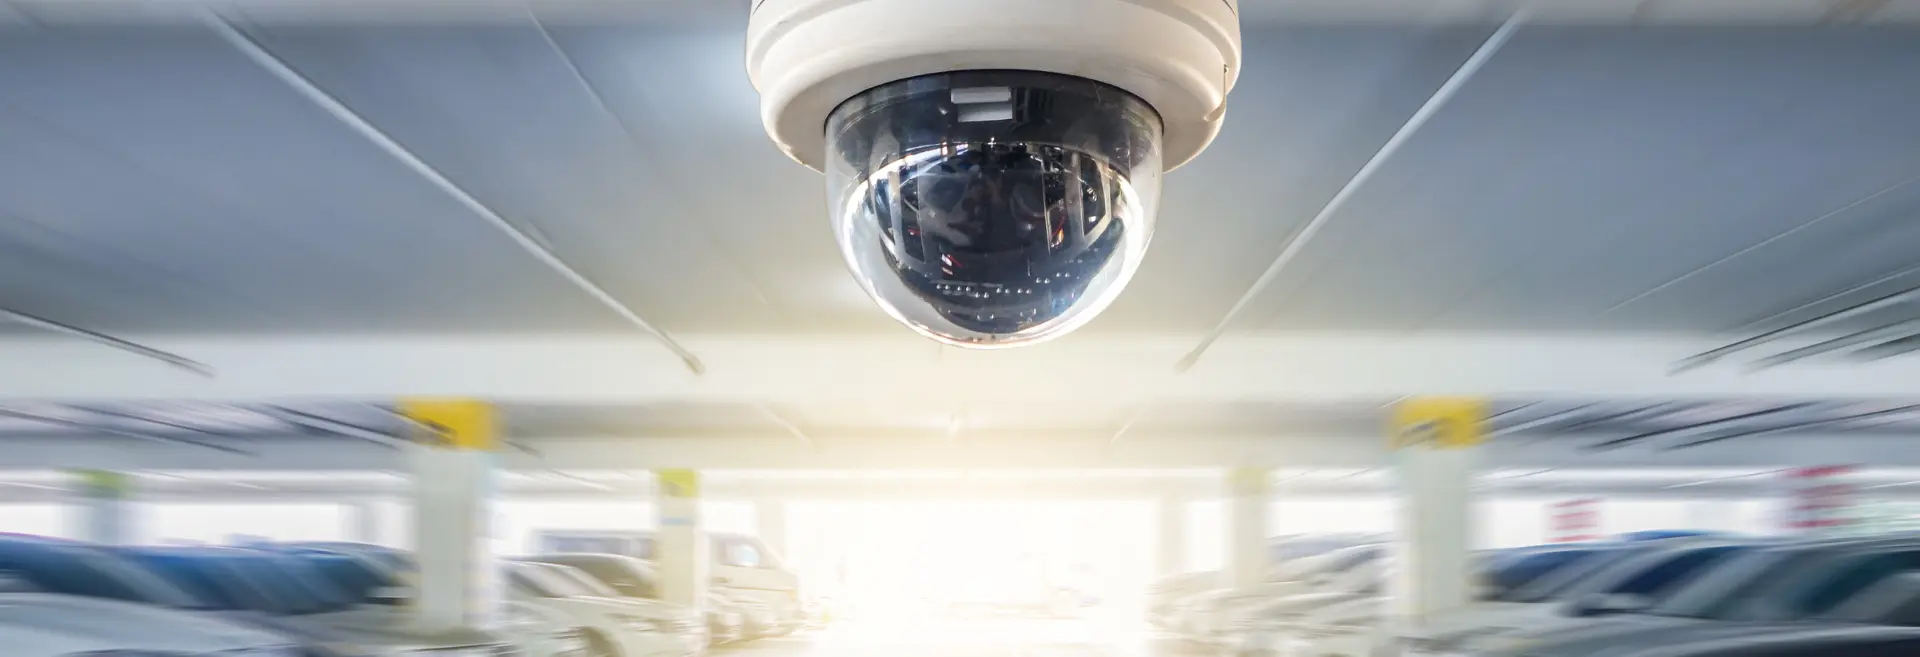 CCTV Installation Solutions in Dubai